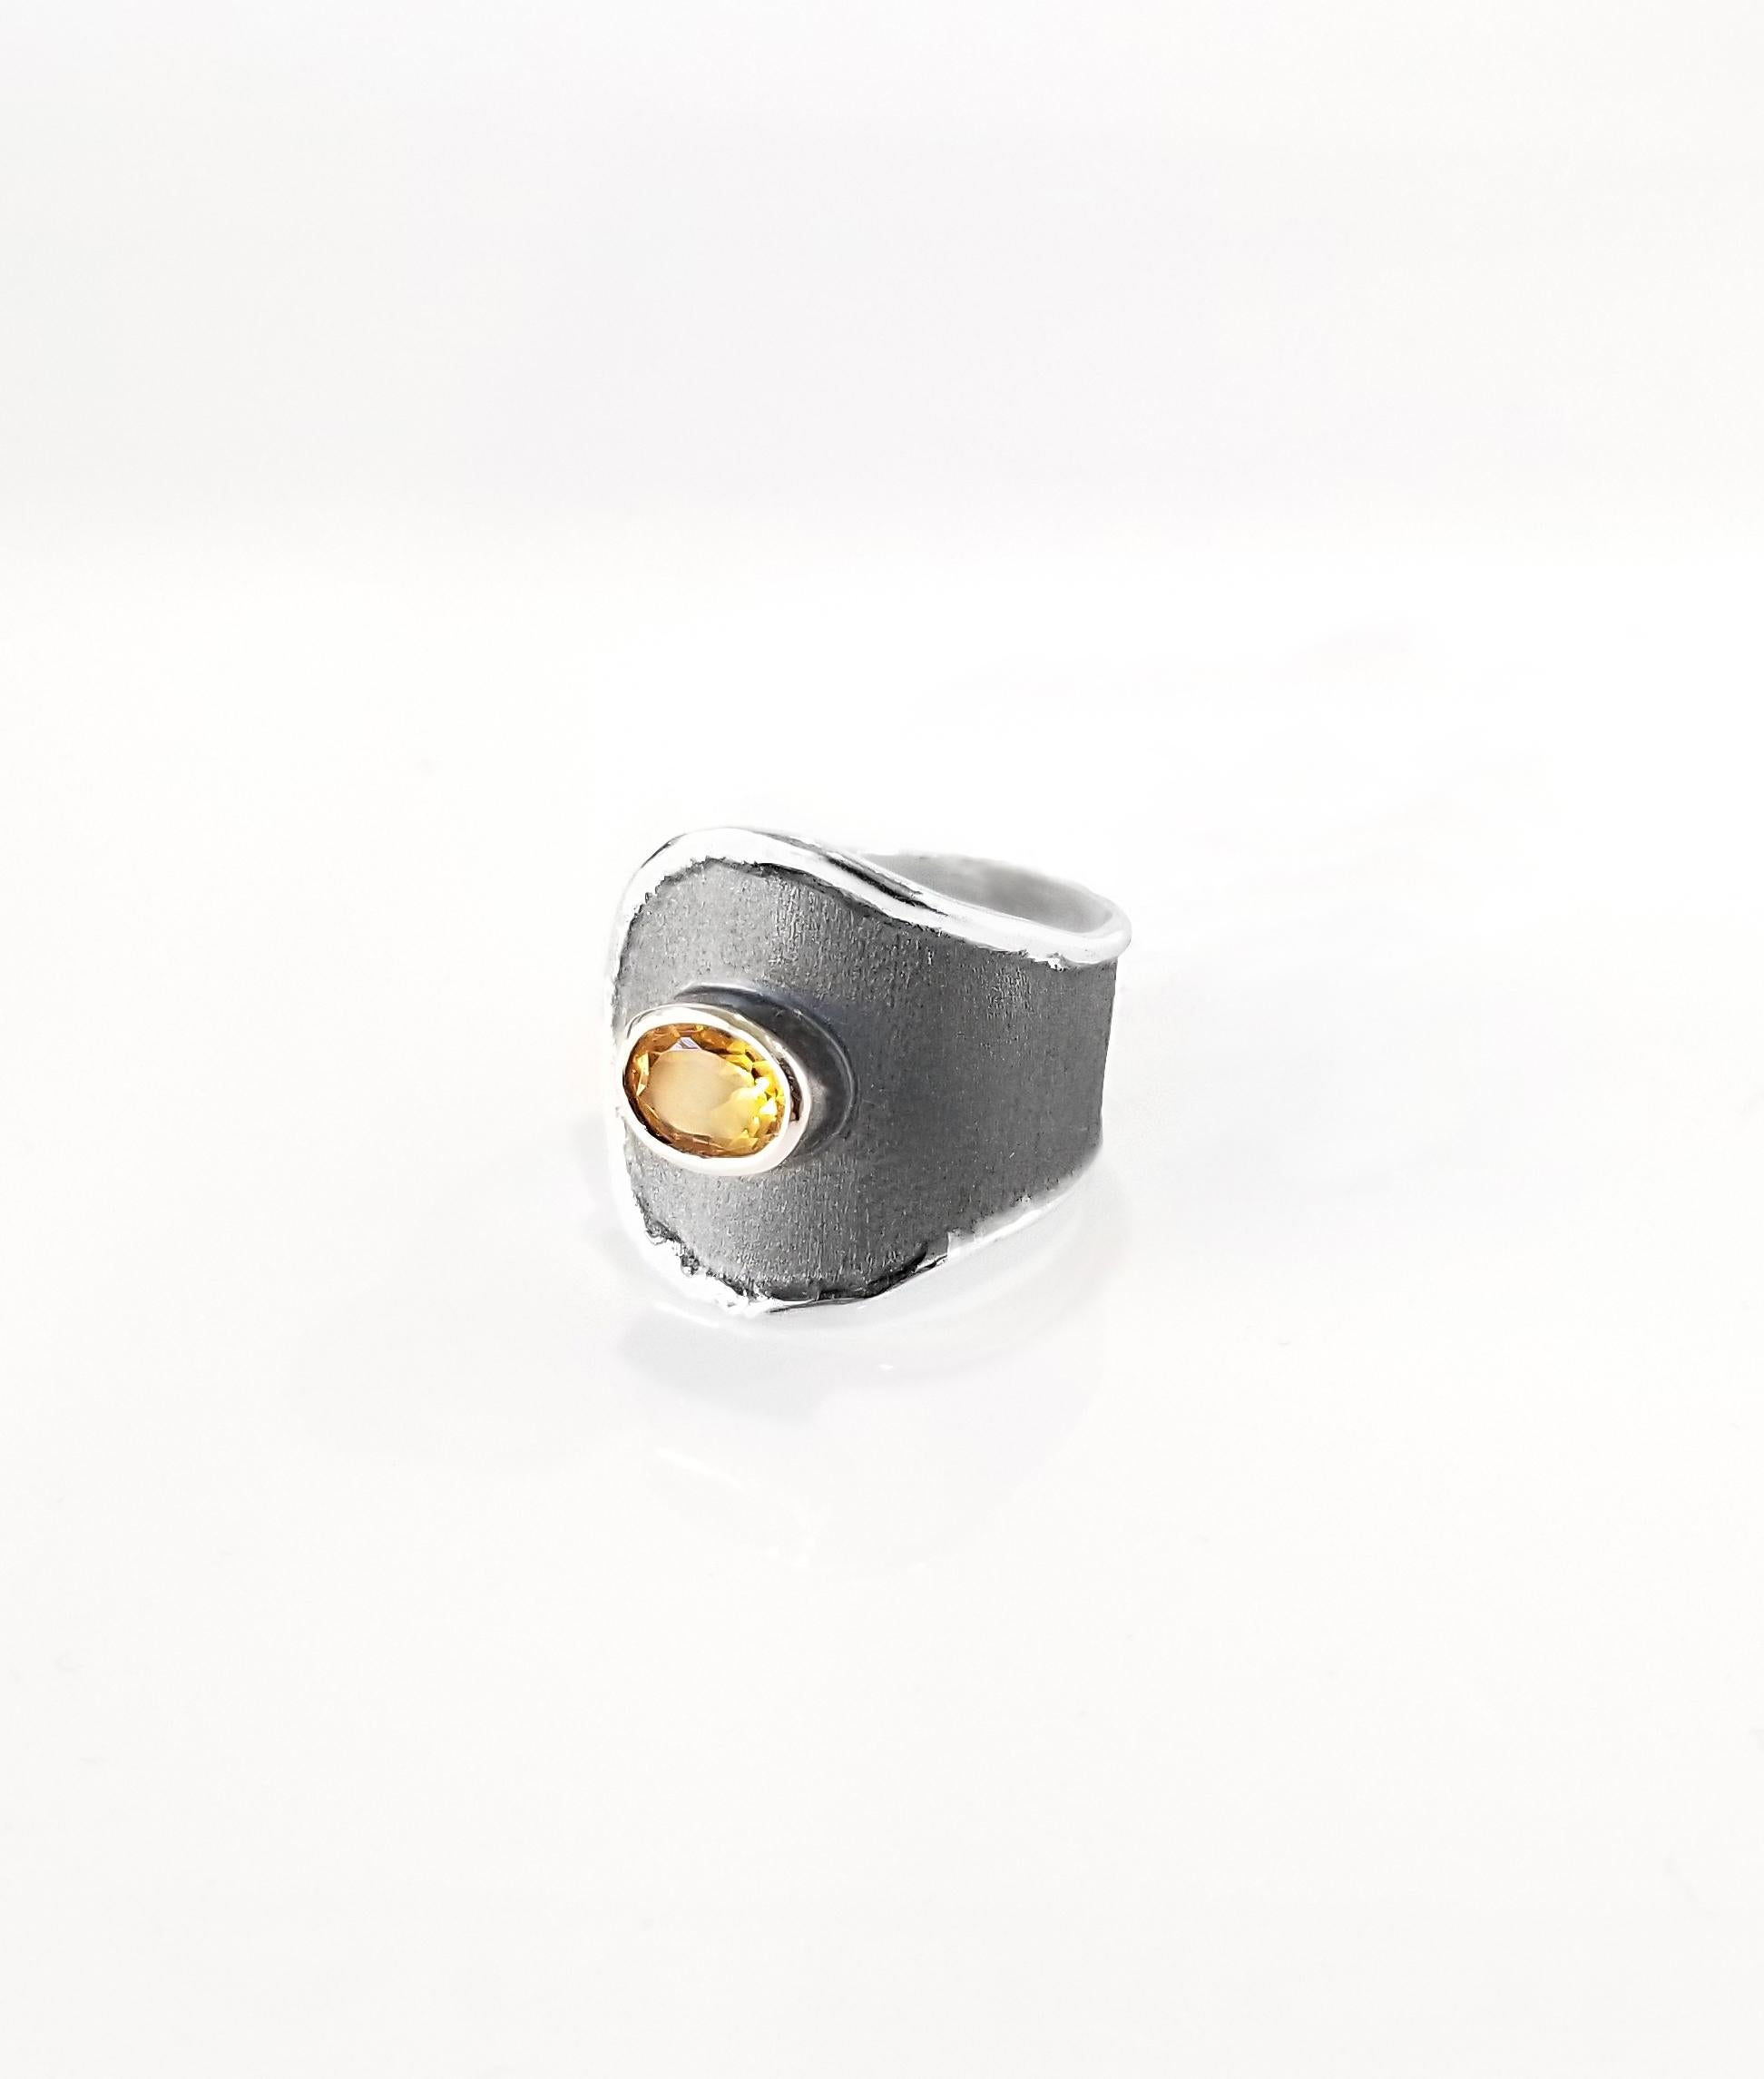 Yianni Creations Hephestos Collection 100% handgefertigter handwerklicher Ring aus Feinsilber. Der Ring ist mit einem 1,25-Karat-Citrin und einem einzigartigen oxidierten Rhodium-Hintergrund versehen, der durch einzigartige Handwerkstechniken -